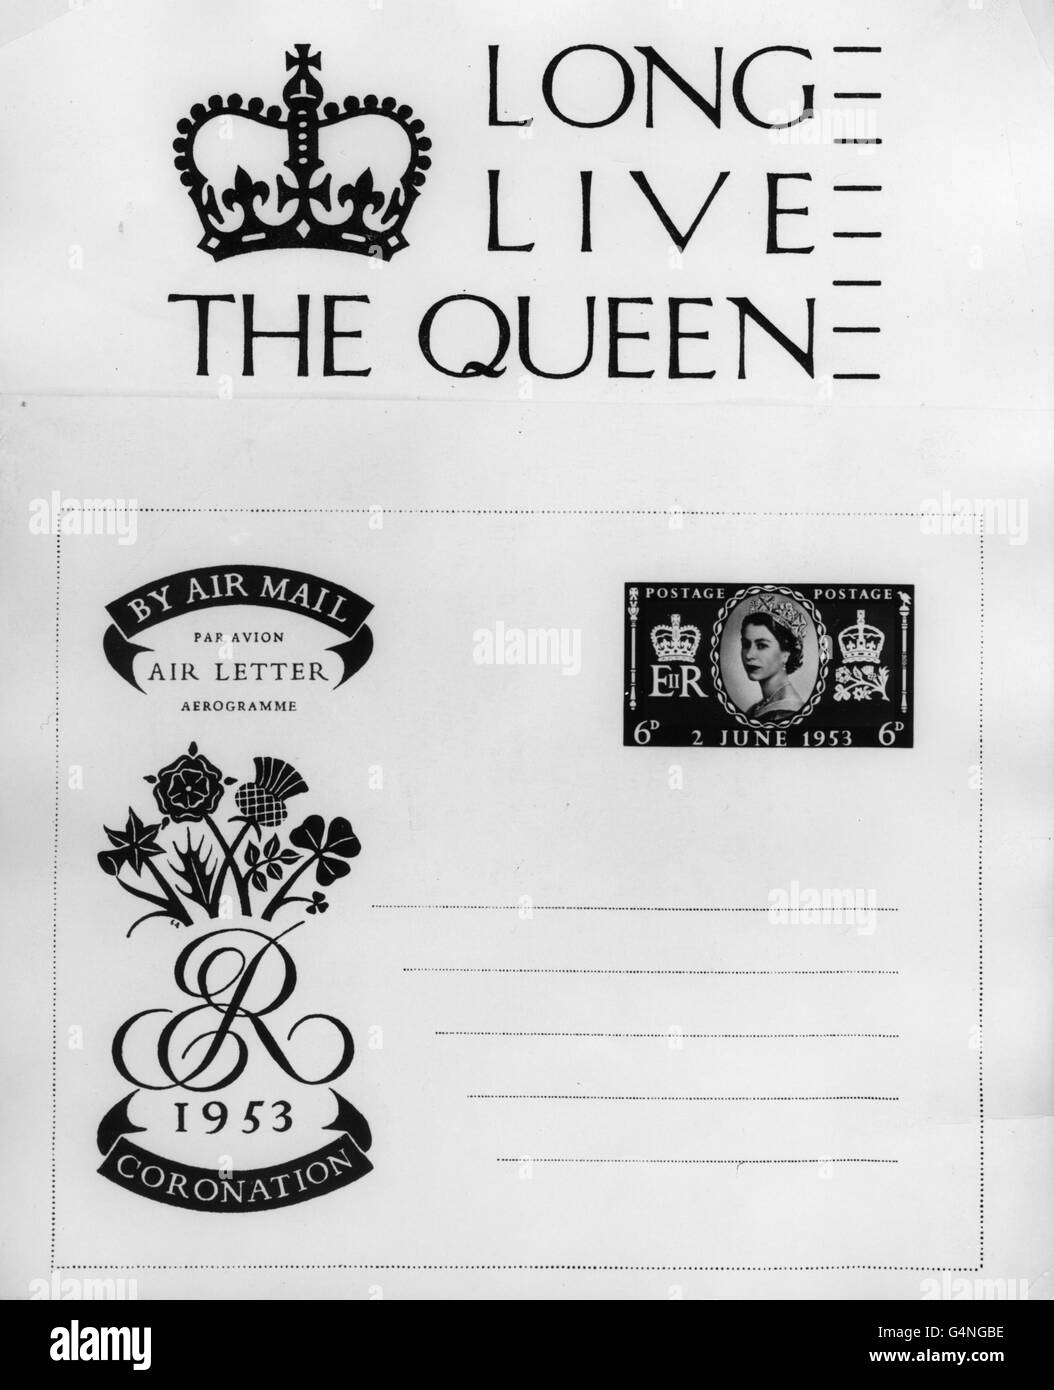 Die spezielle Poststempel und Air Letter Form, die von der Post eingeführt wurden, um die Krönung von Königin Elizabeth II. Zu gedenken Stockfoto